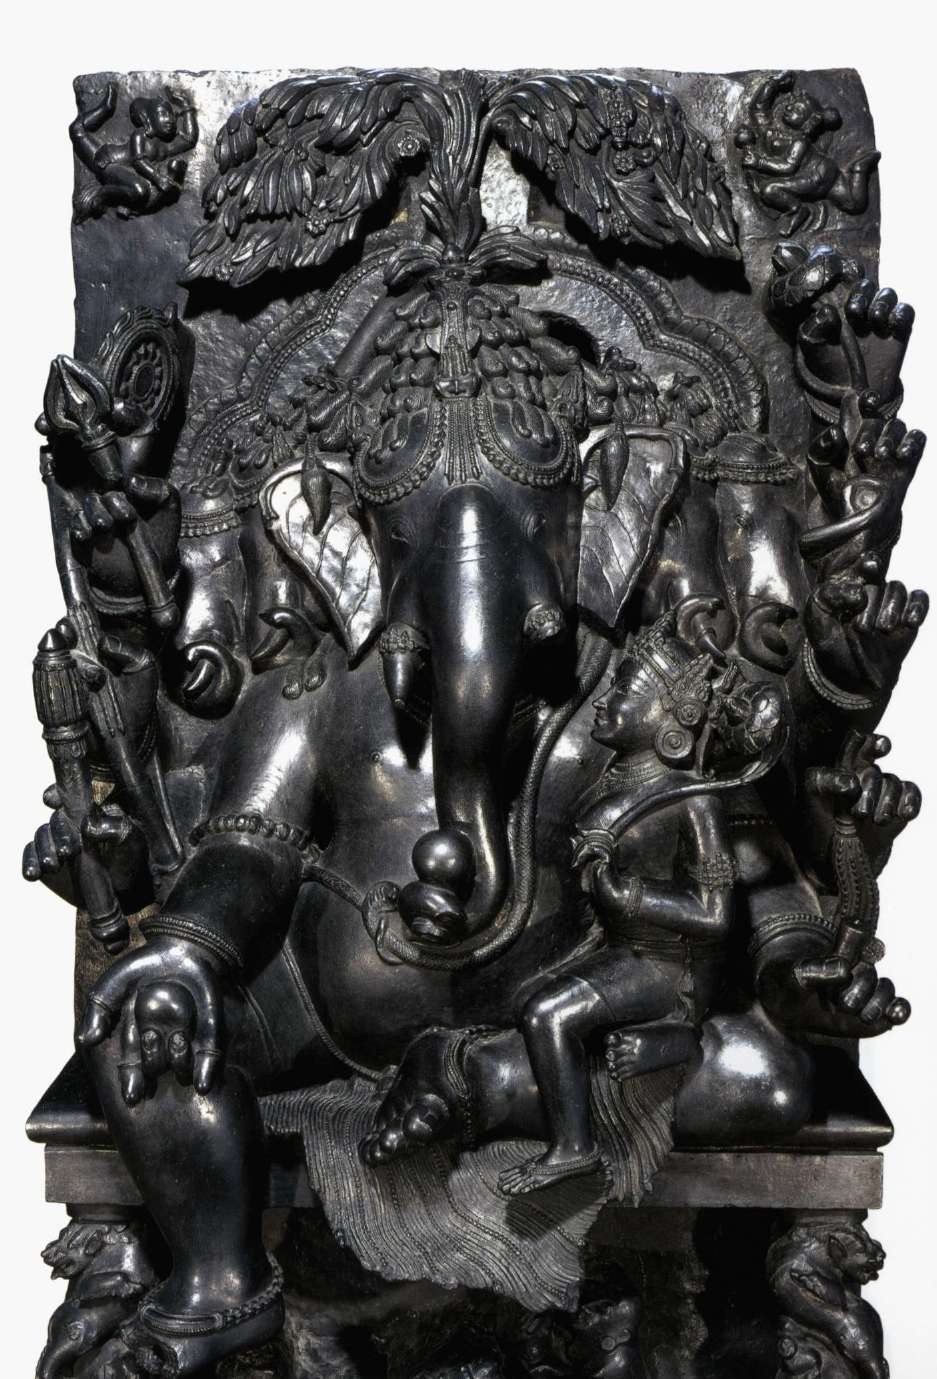 Cette statue représente Ganesh, un dieu hindou à tête d'éléphant